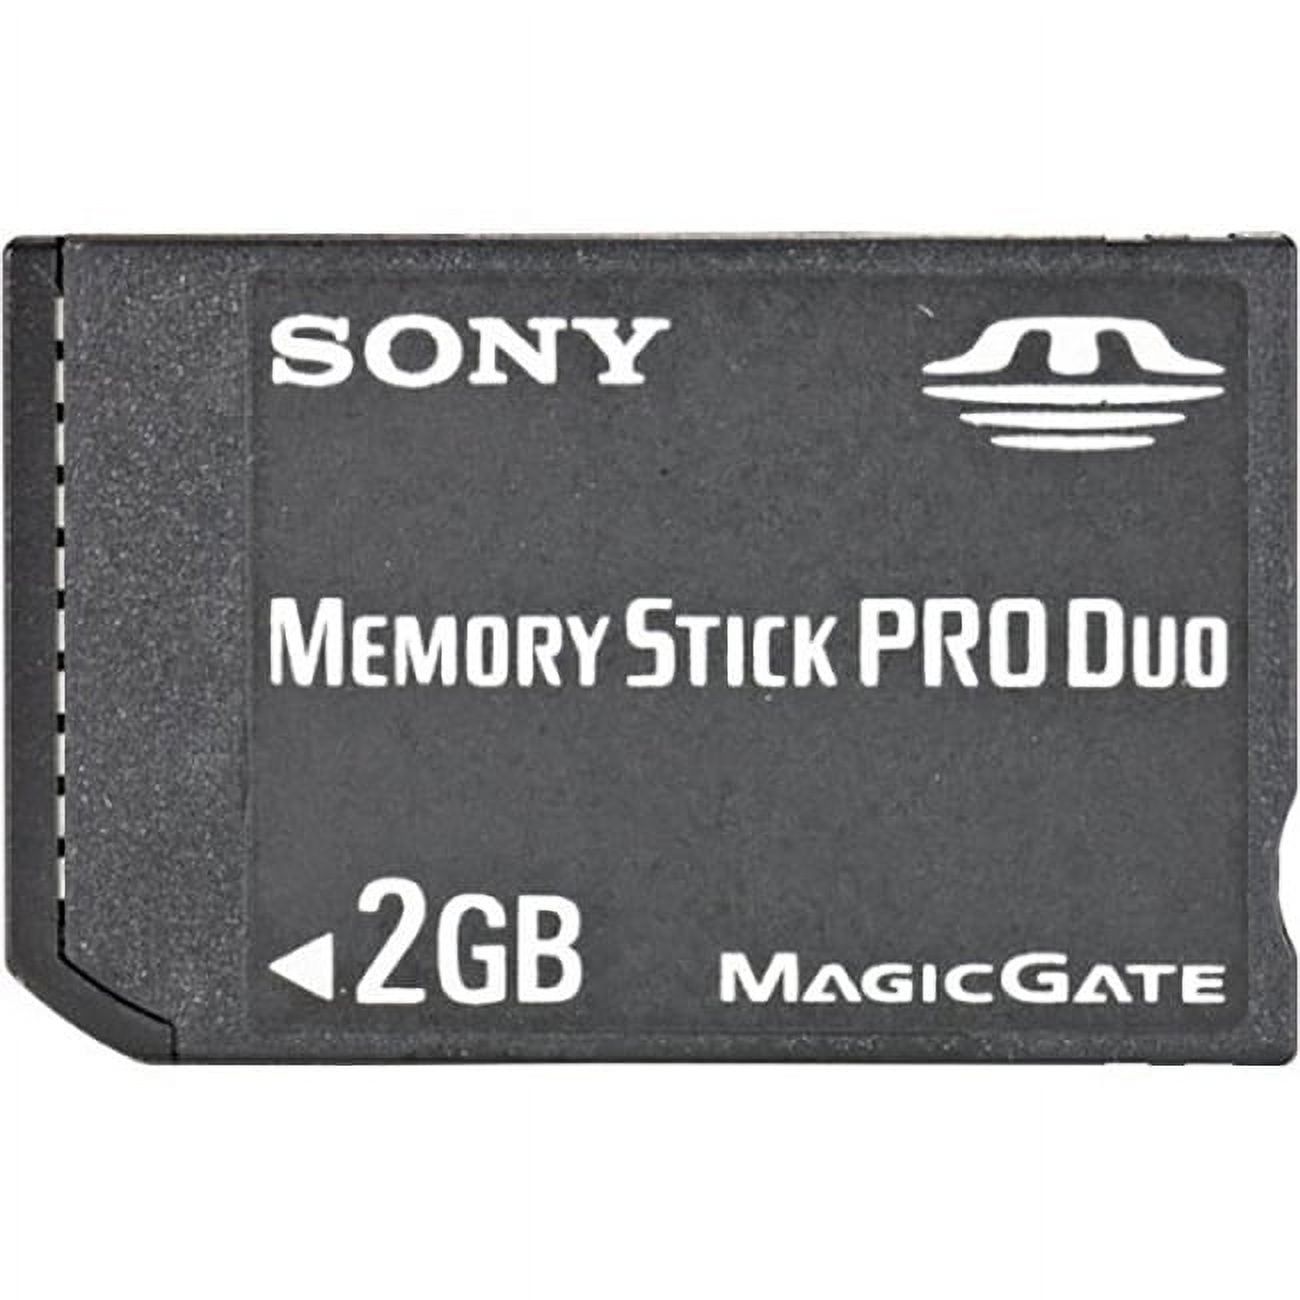 Buy Sony PSP MEM 4GB Memory Stick PRO Duo for PSP Online at Best